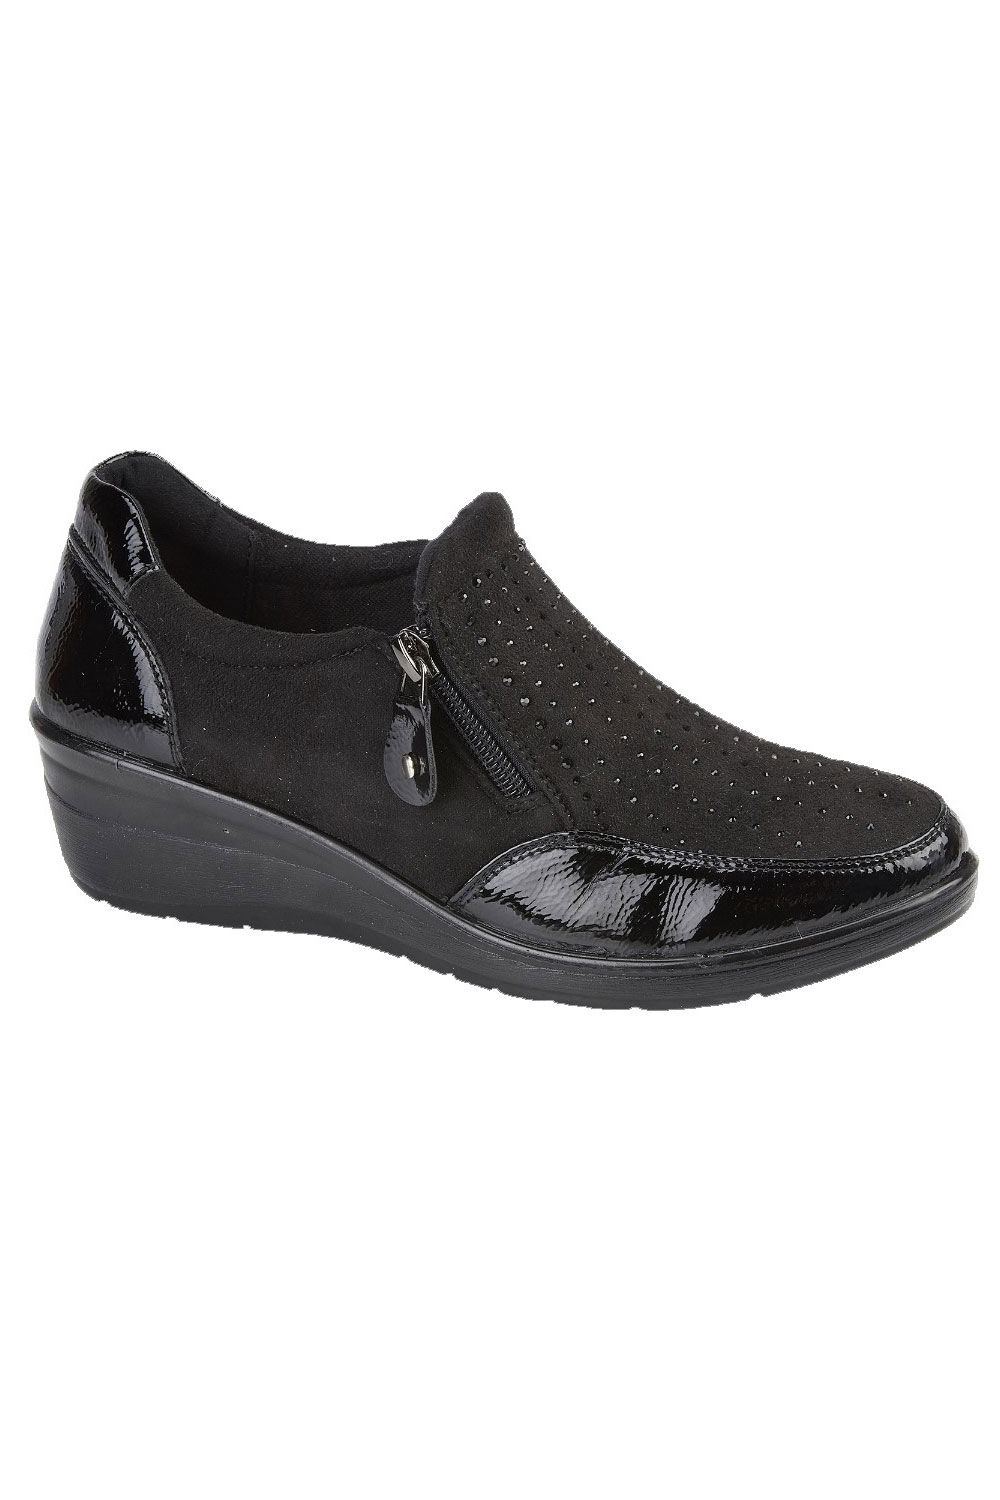 Jo & Joe Black - Diamante Wedge Heel Ankle Boots, Size: 5